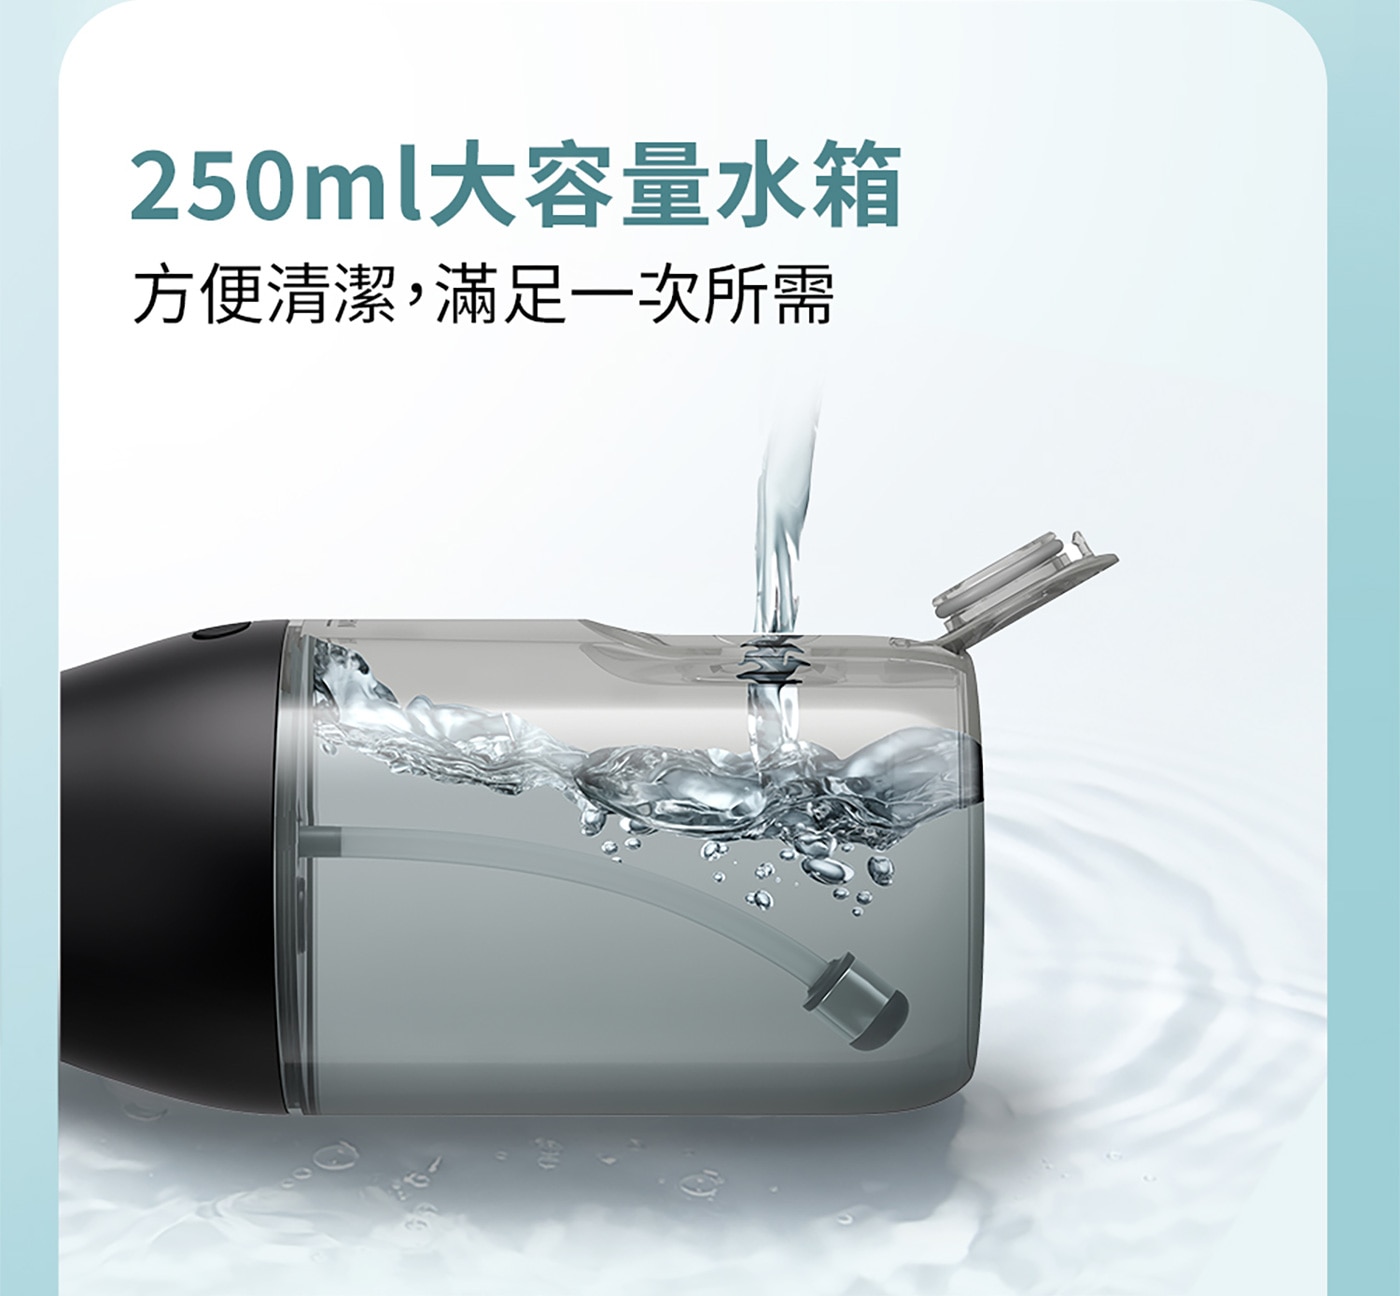 飛利浦 Sonicare X型水流電動沖牙機 HX3806/33，快速有效清除99%牙菌斑。高達8倍清潔力，深入齒縫潔牙零死角。60秒完成齒縫清潔，潔牙快速又安心。